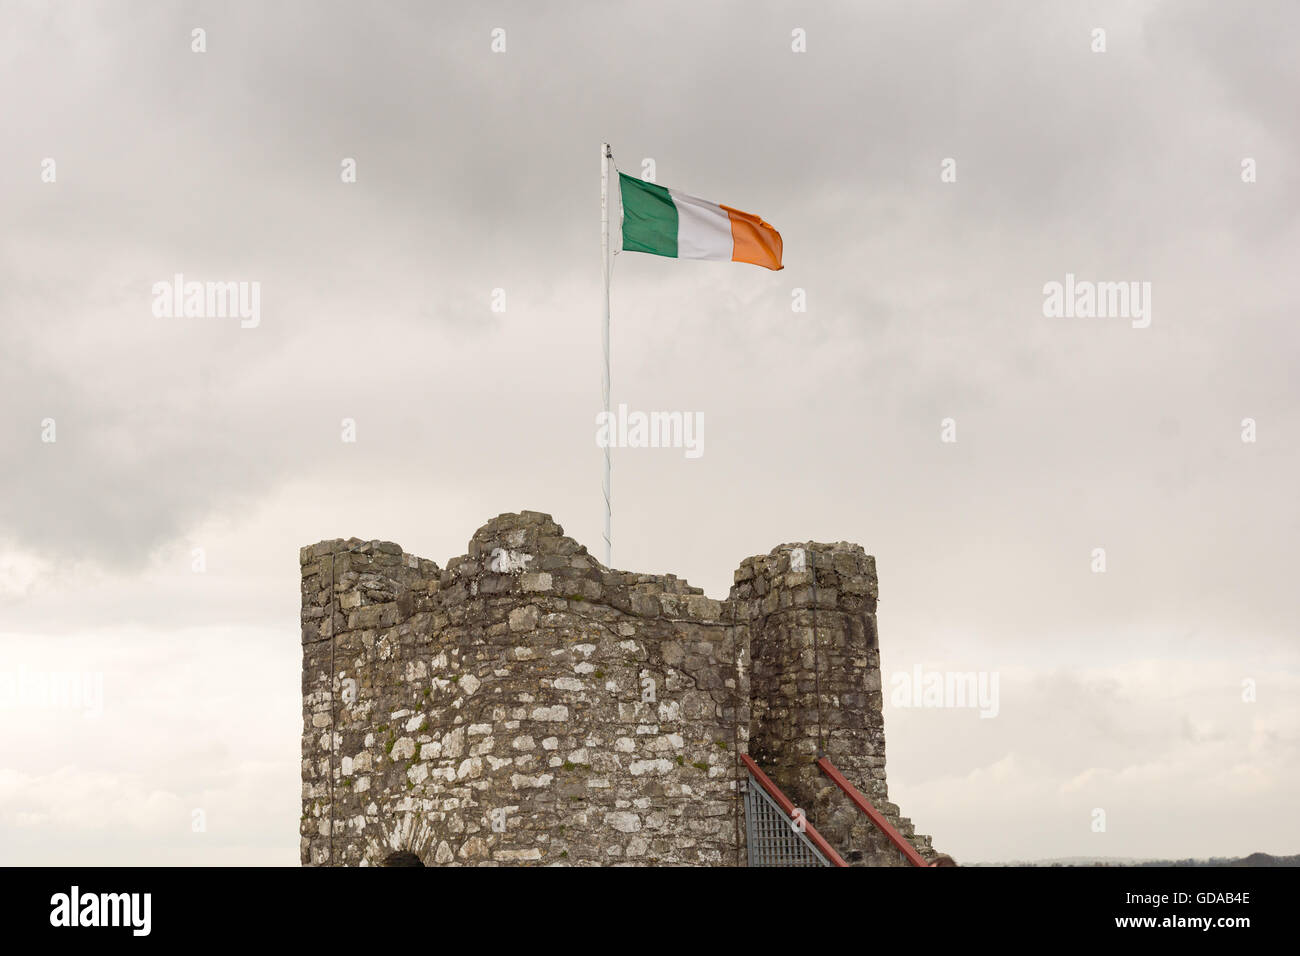 L'Irlande, le comté de Meath, tour du château avec drapeau irlandais Banque D'Images